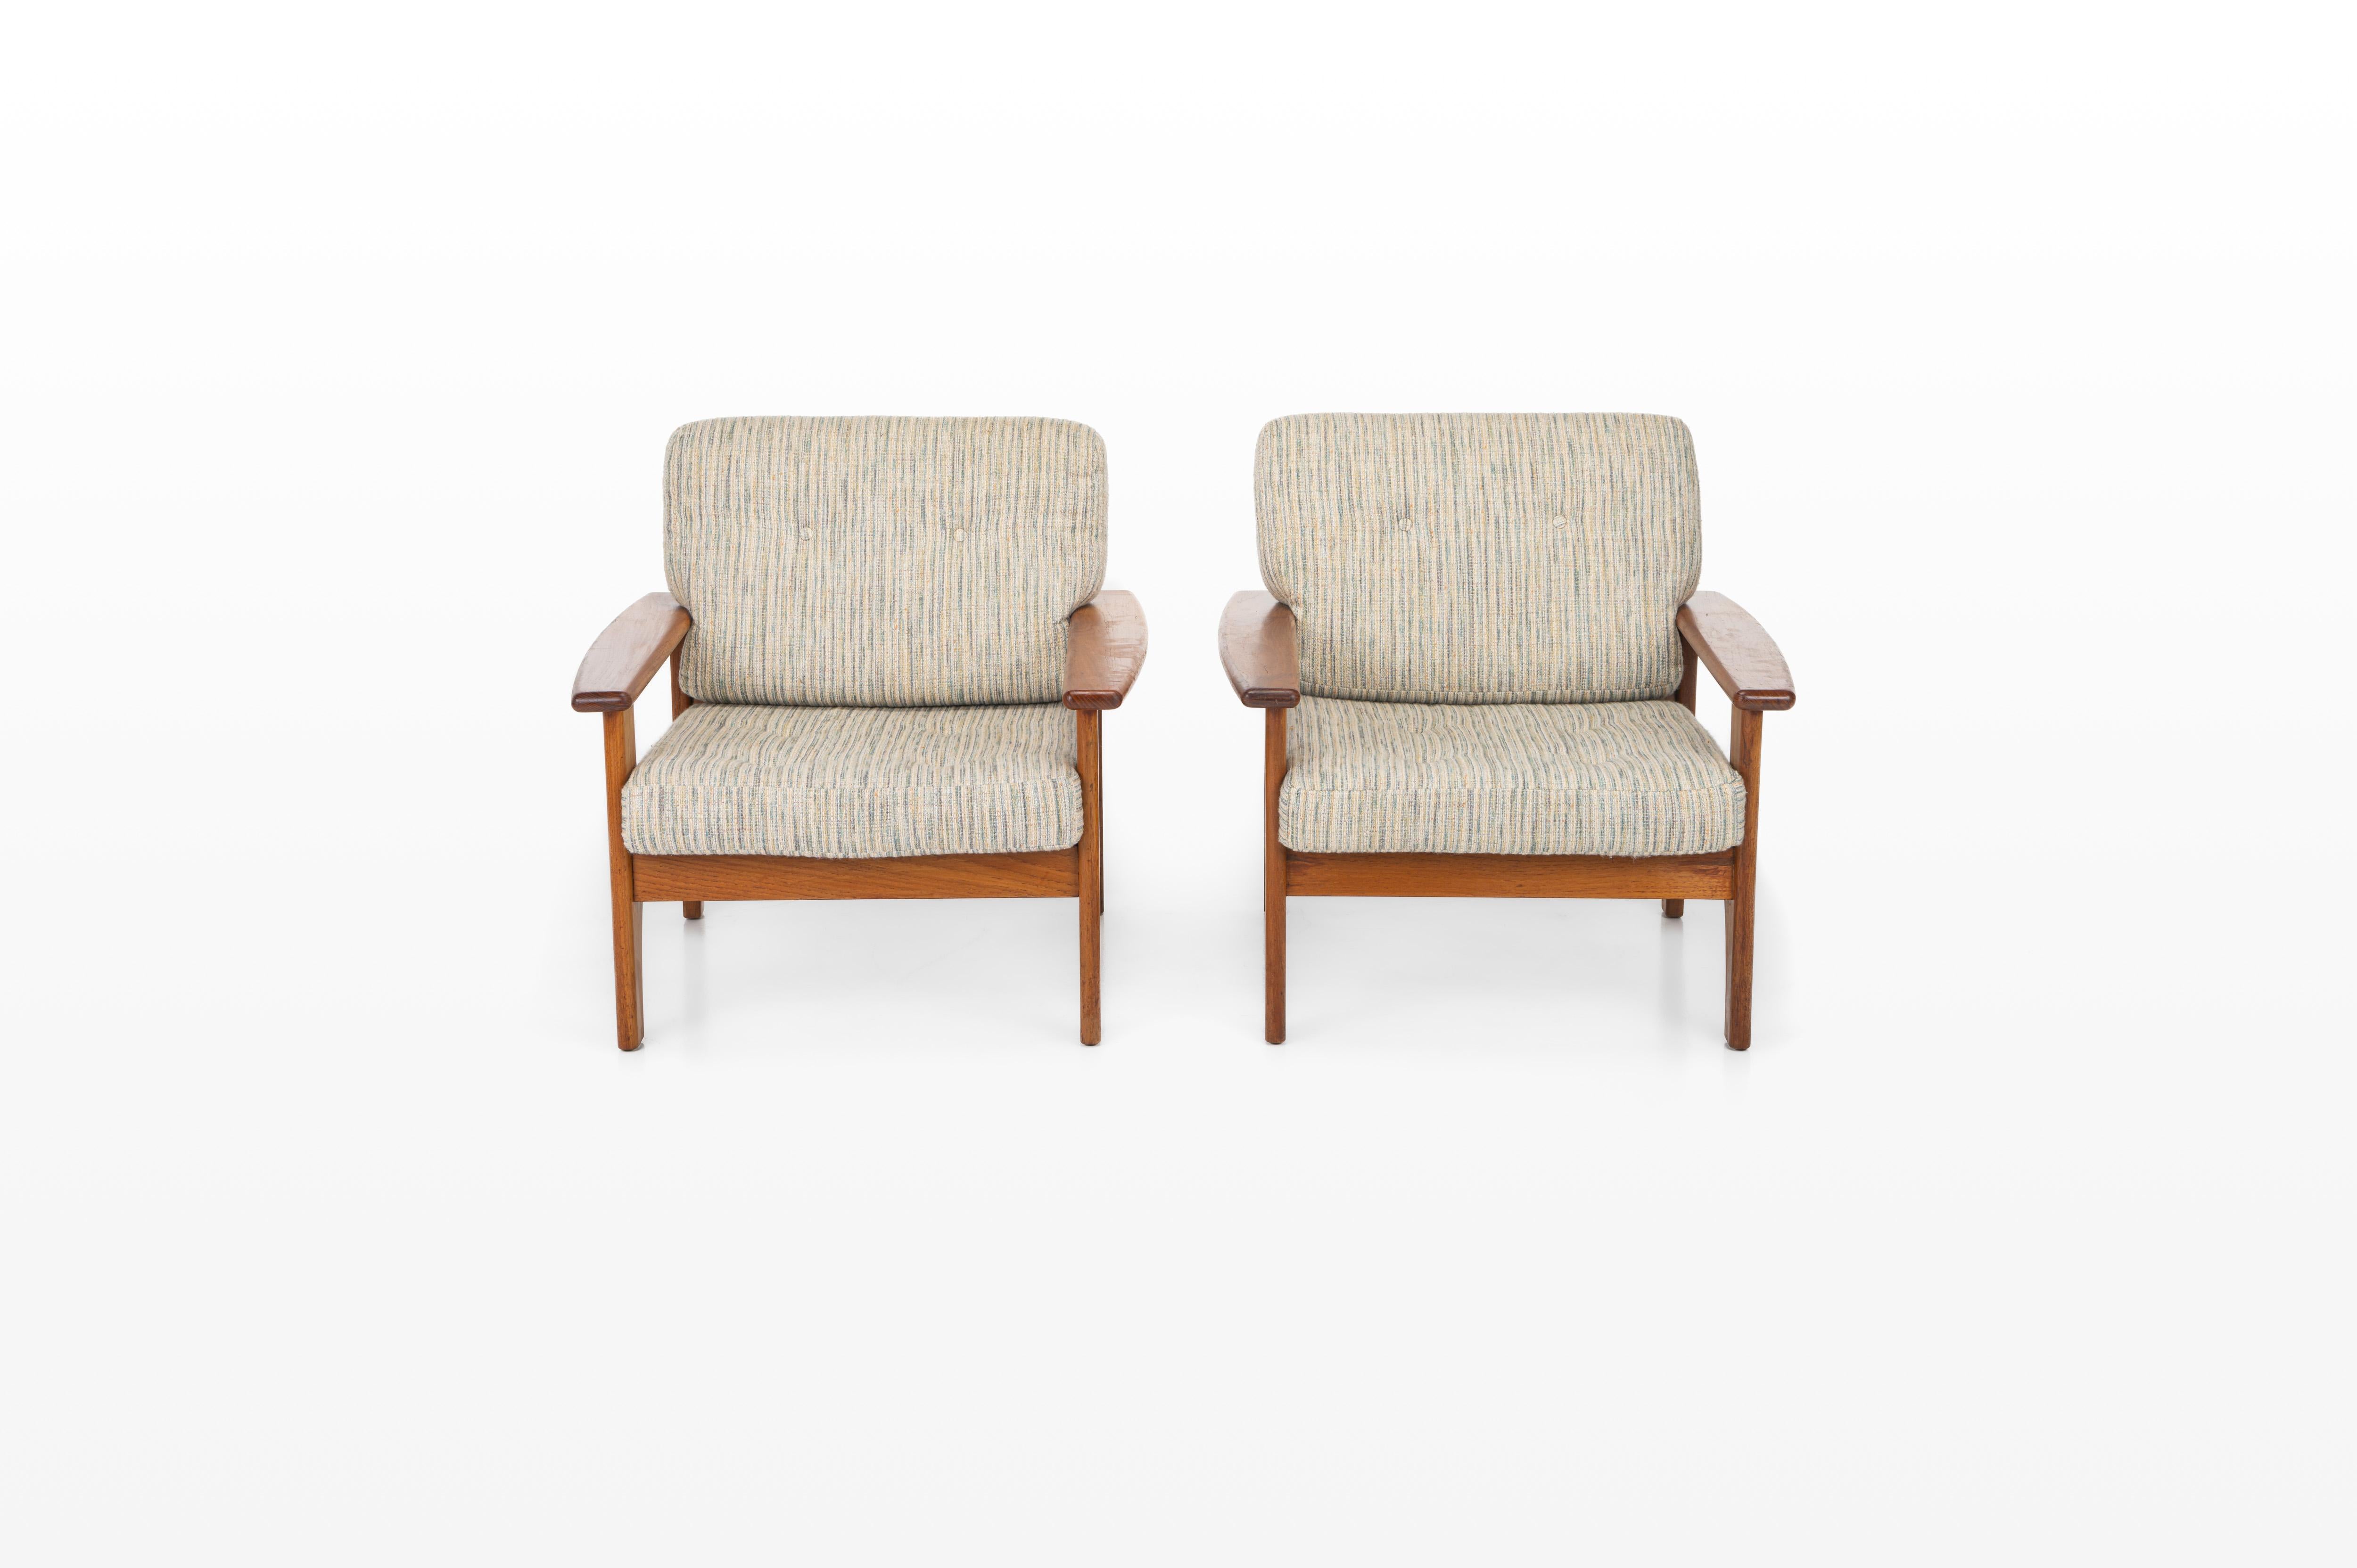 Joli ensemble de deux chaises longues vintage. Ces chaises longues ont été produites au Danemark dans les années 1960. Ils ont un cadre en teck et un tissu blanc-bleu. Le canapé assorti est également disponible.

Dimensions :
L : 80 cm
D : 80 cm
H :